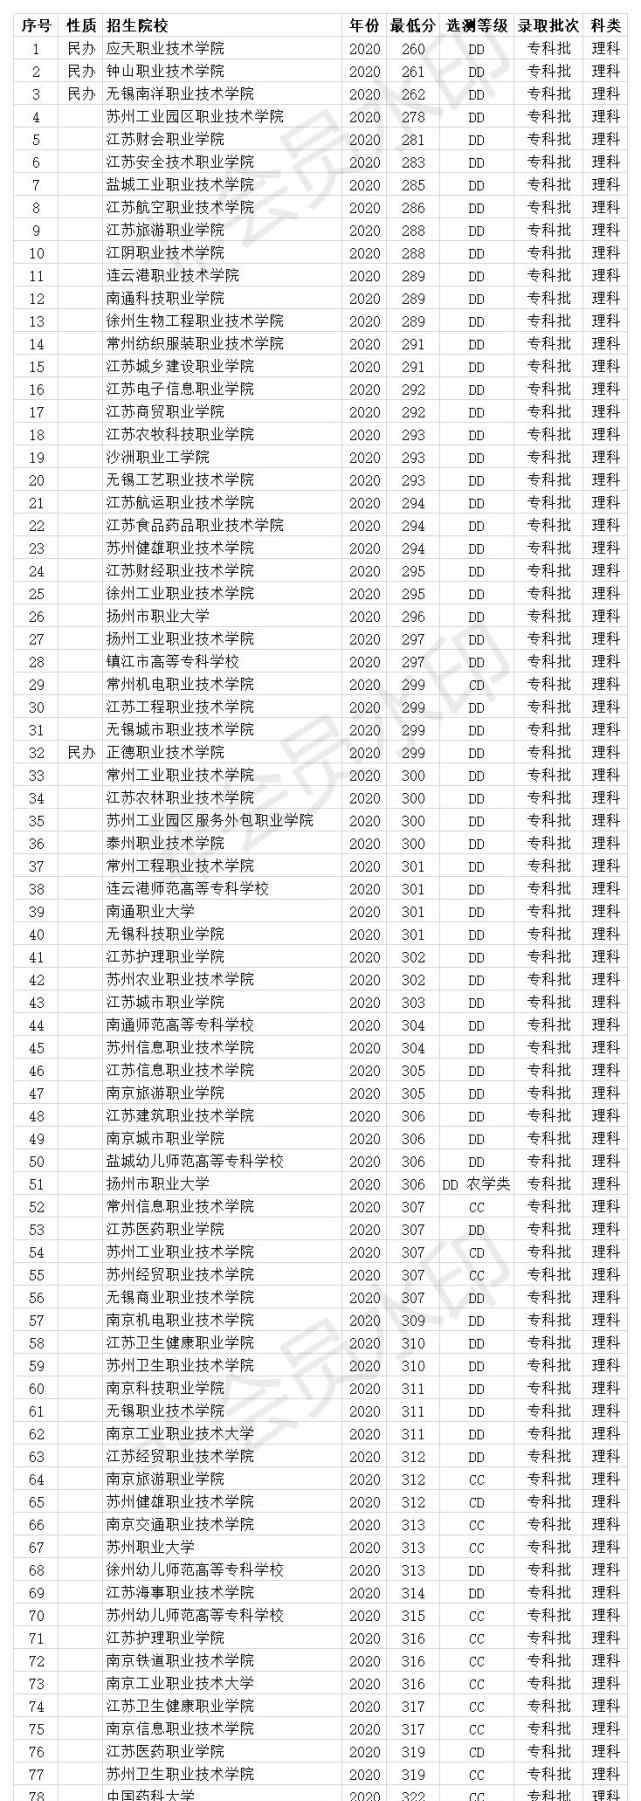 江苏专科分数线 江苏专科学校2020年录取分数线 71所大学 投档线最低230分